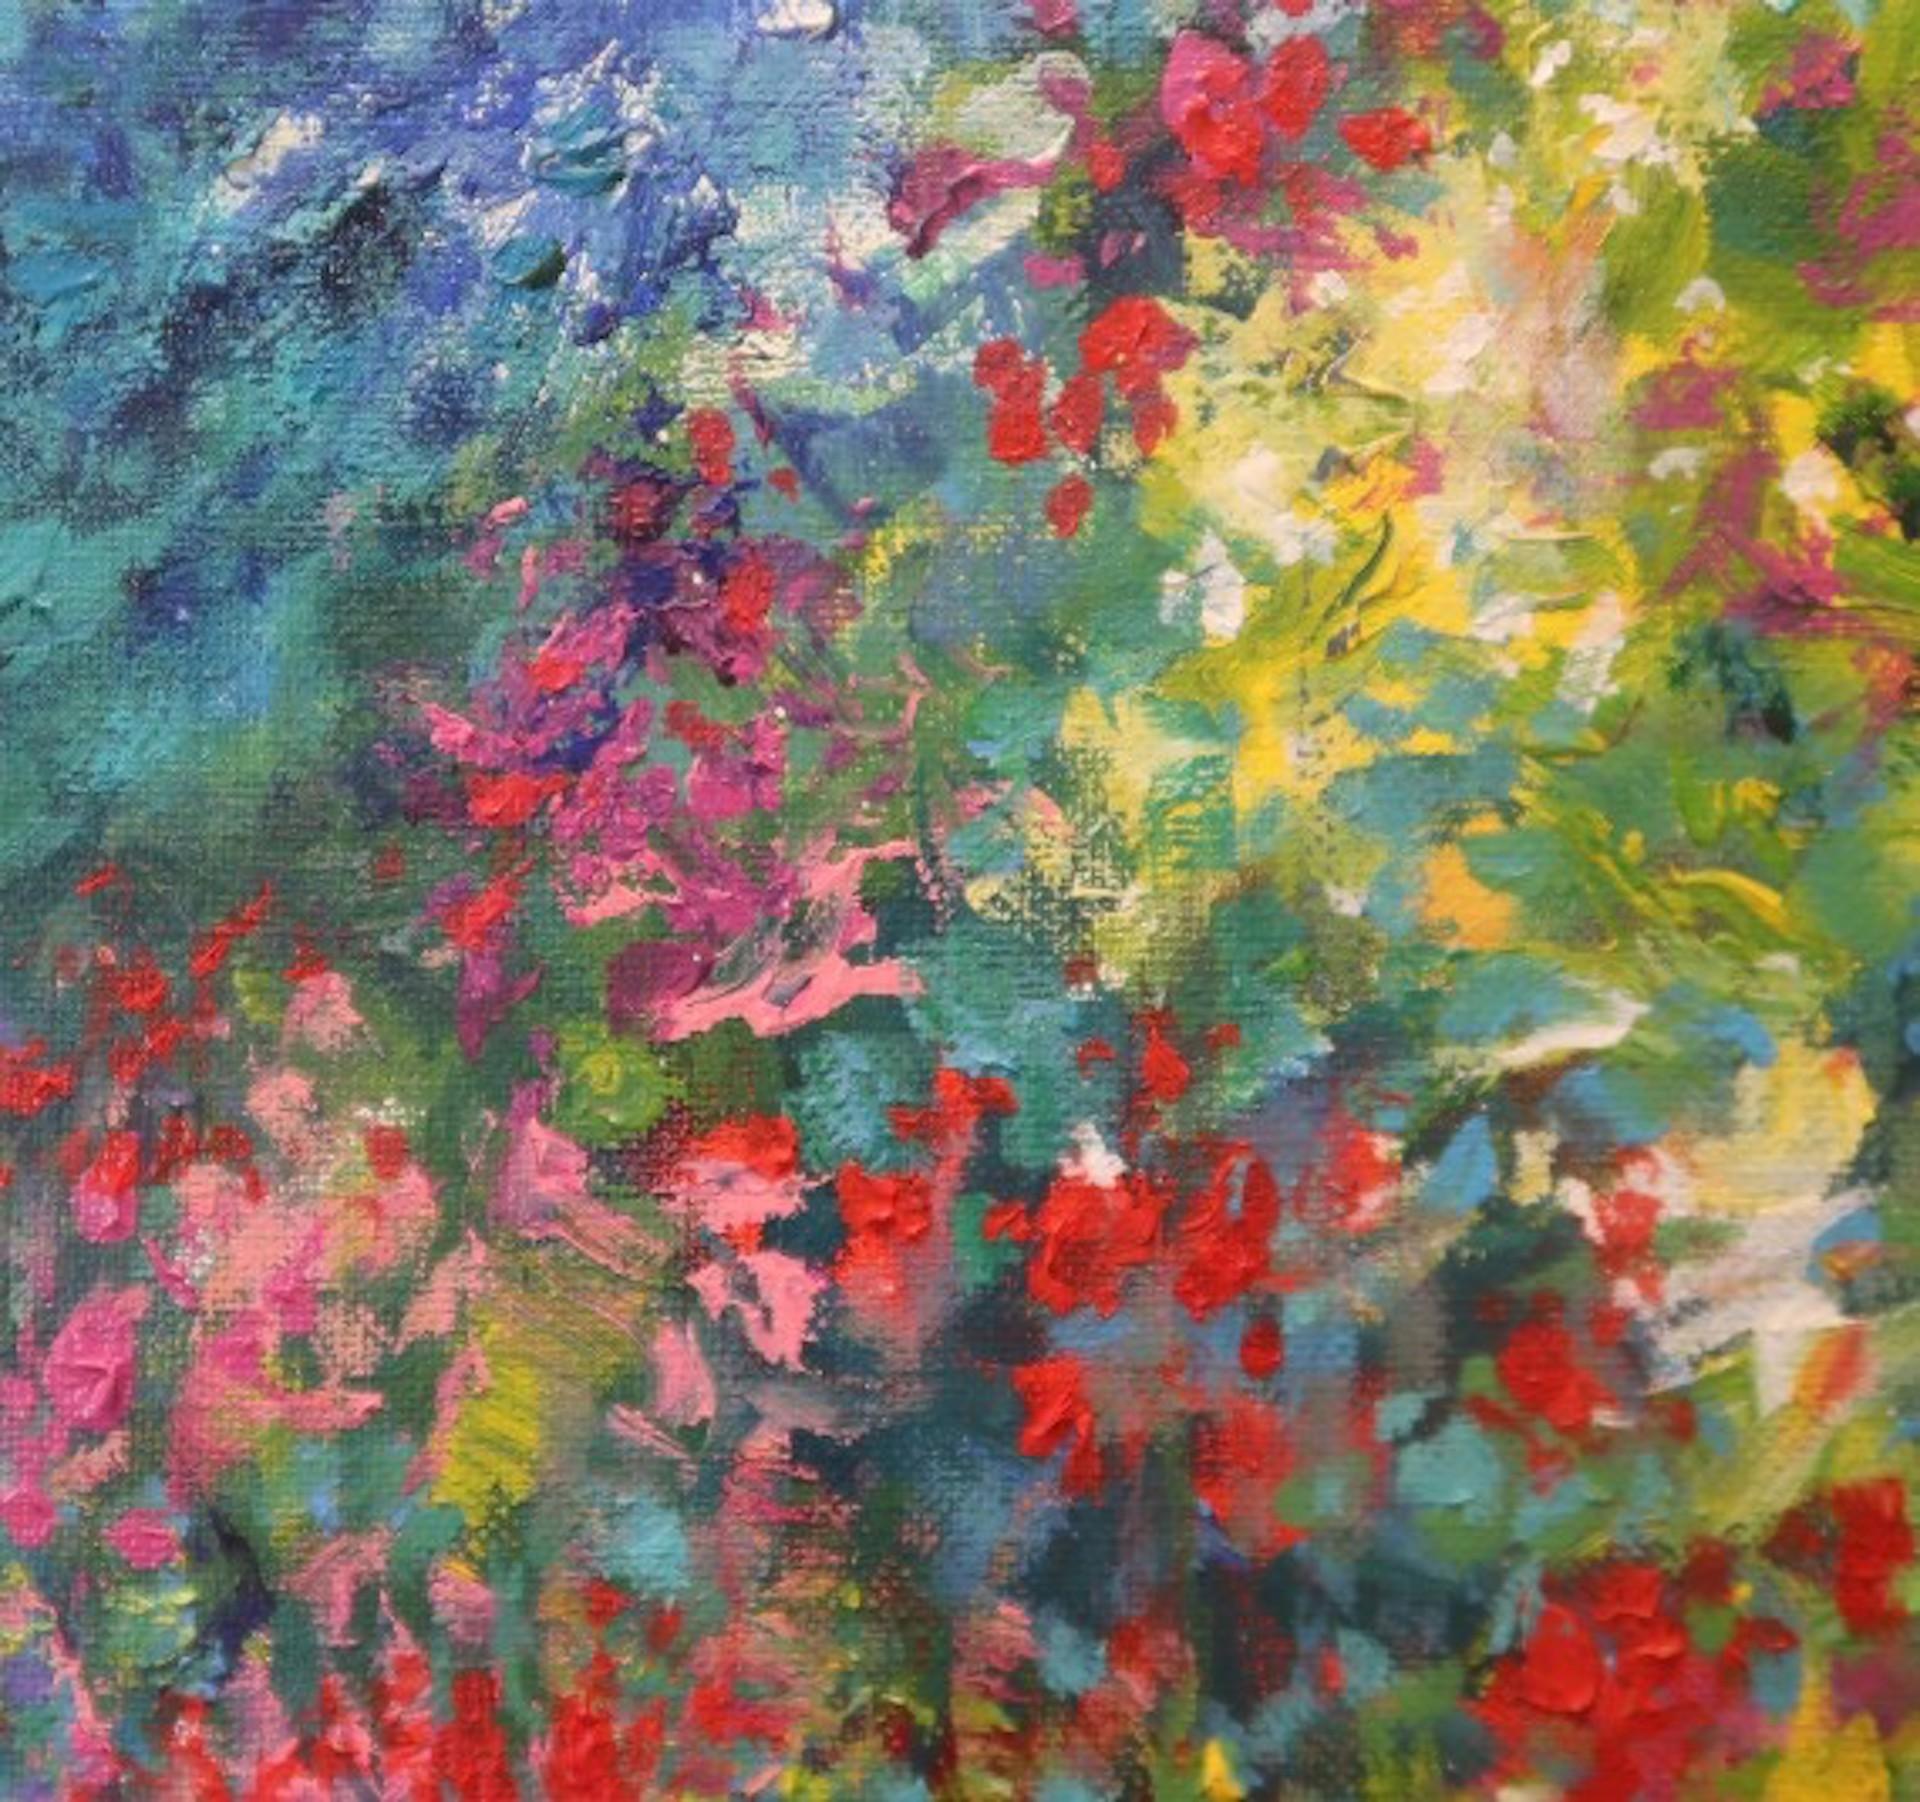 Rose Time At Monet's Garden, Original, Impressionist Floral Landscape Painting For Sale 1